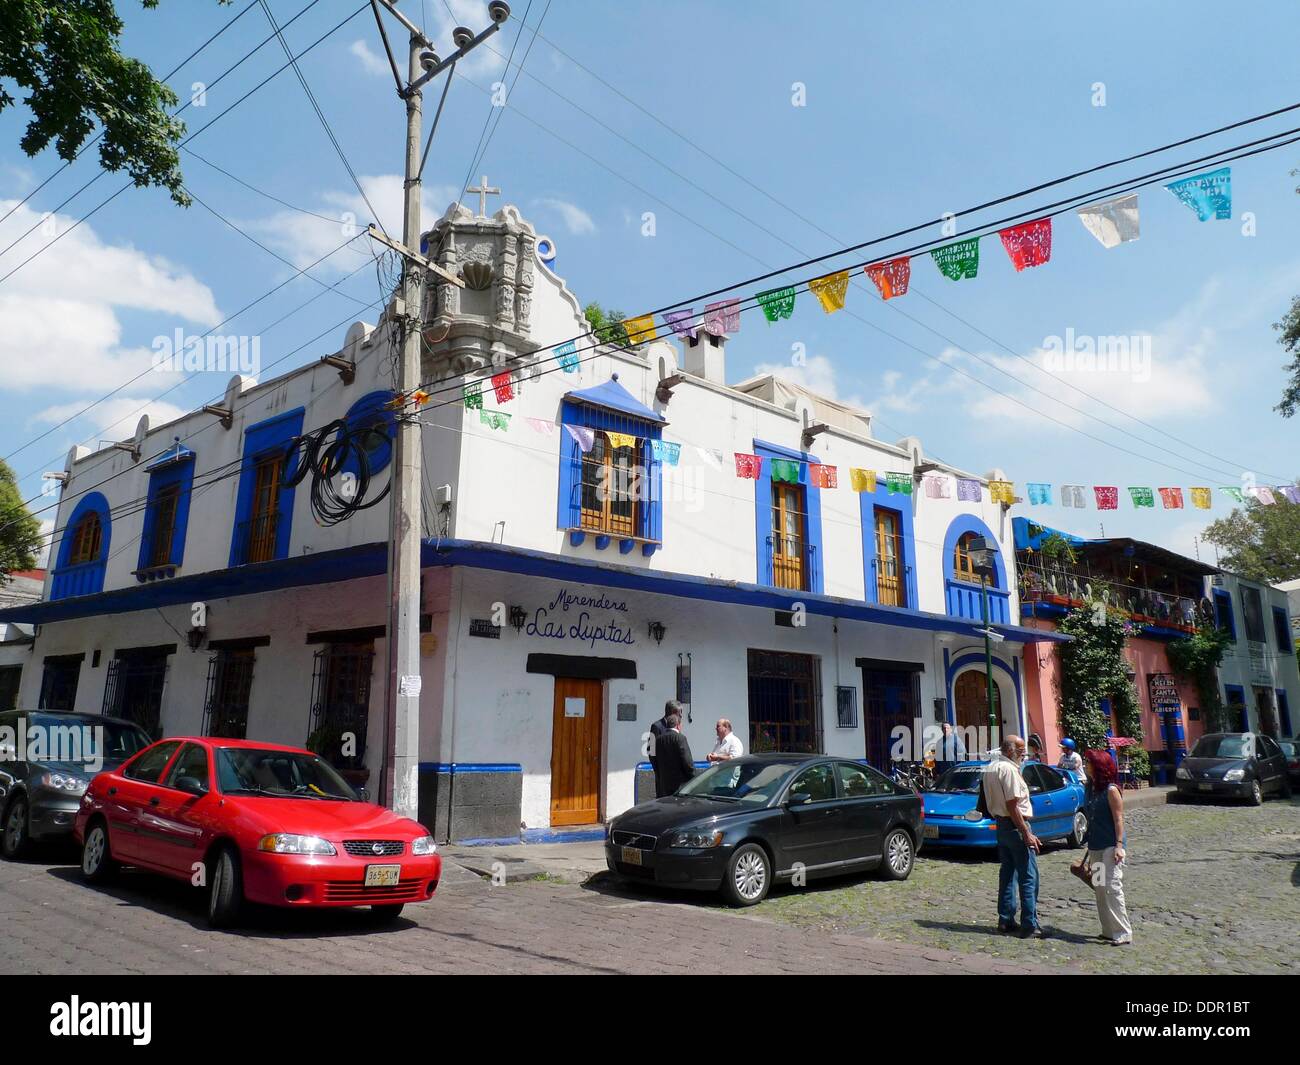 Merendero Las Lupitas, Coyoacán, Mexico Stock Photo - Alamy